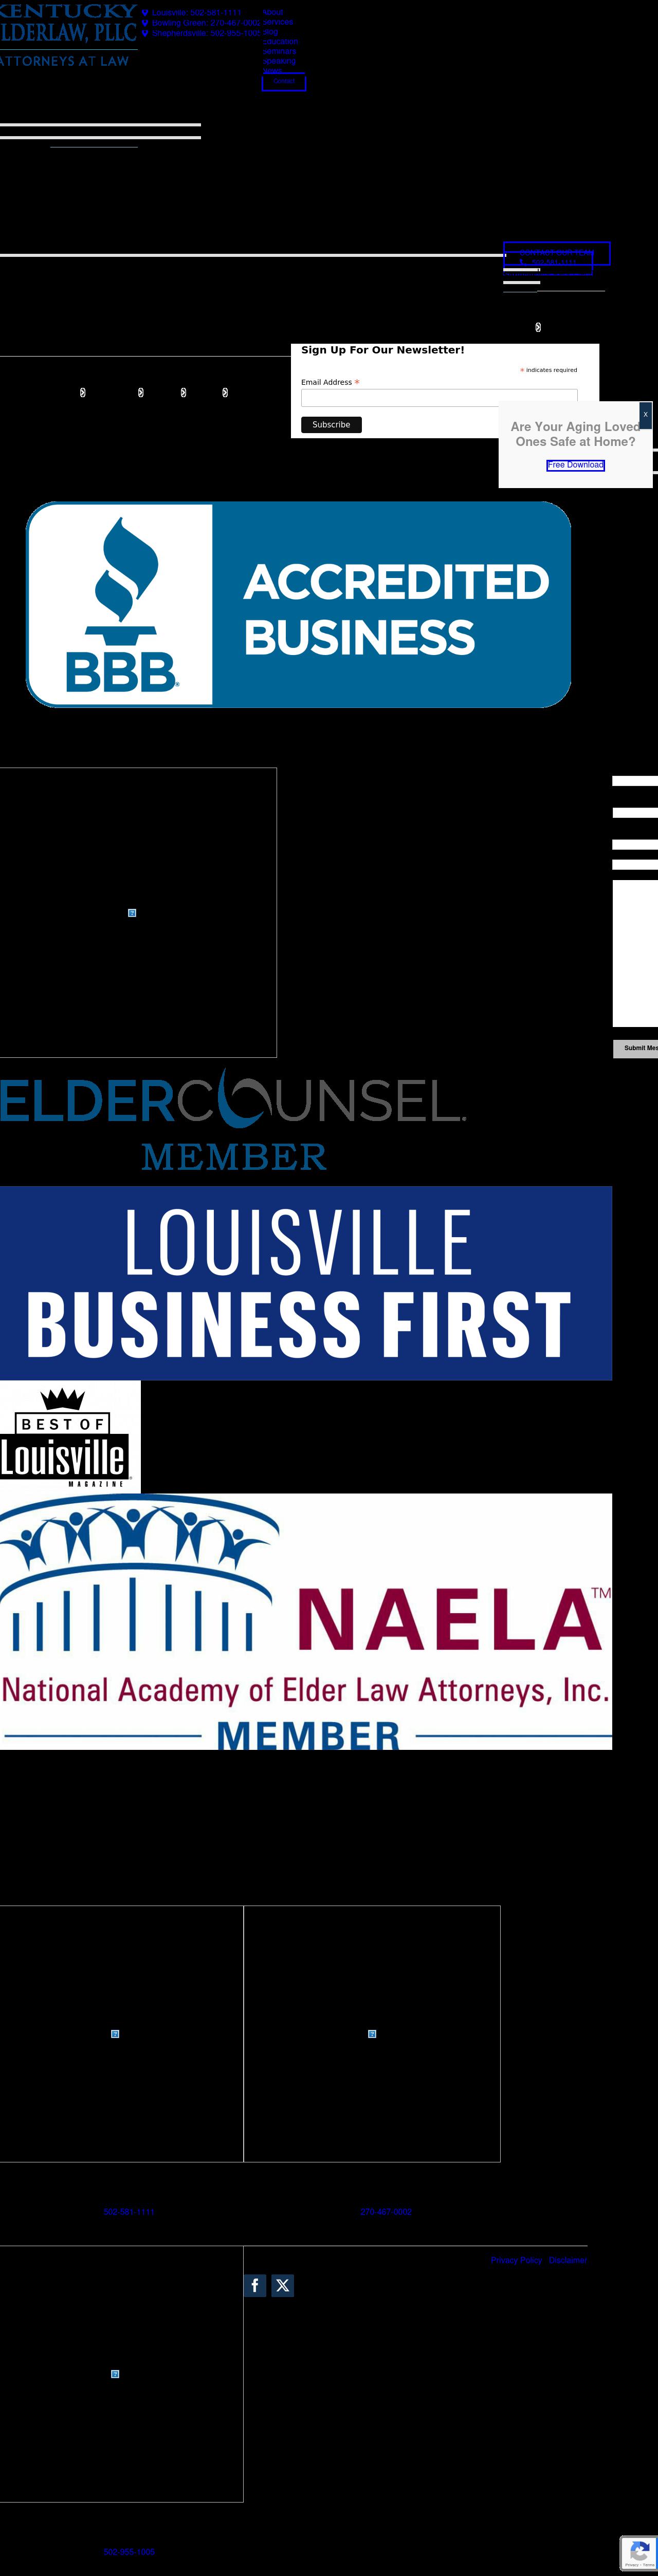 Kentucky ElderLaw PLLC - Louisville KY Lawyers